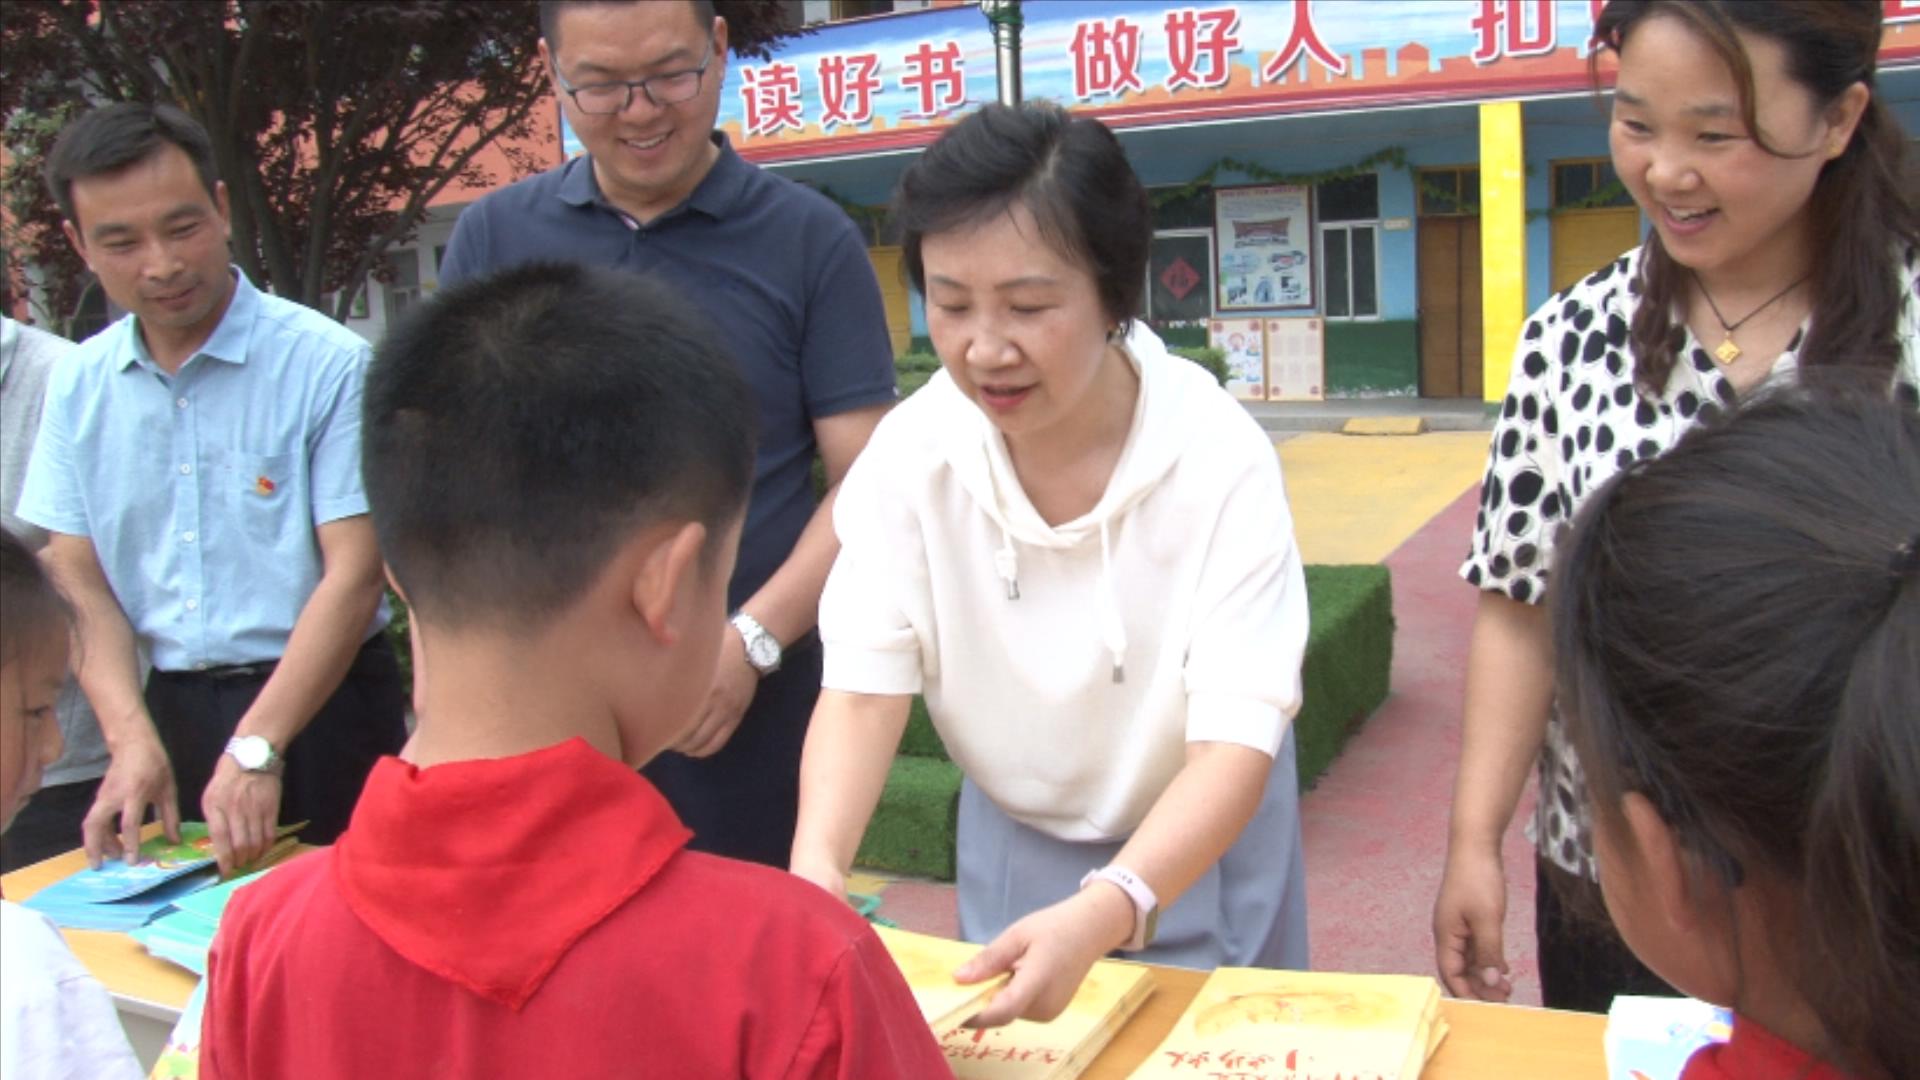 传递书香!河南省公益文化传播基金会向武陟县中水寨村小学捐赠儿童绘本